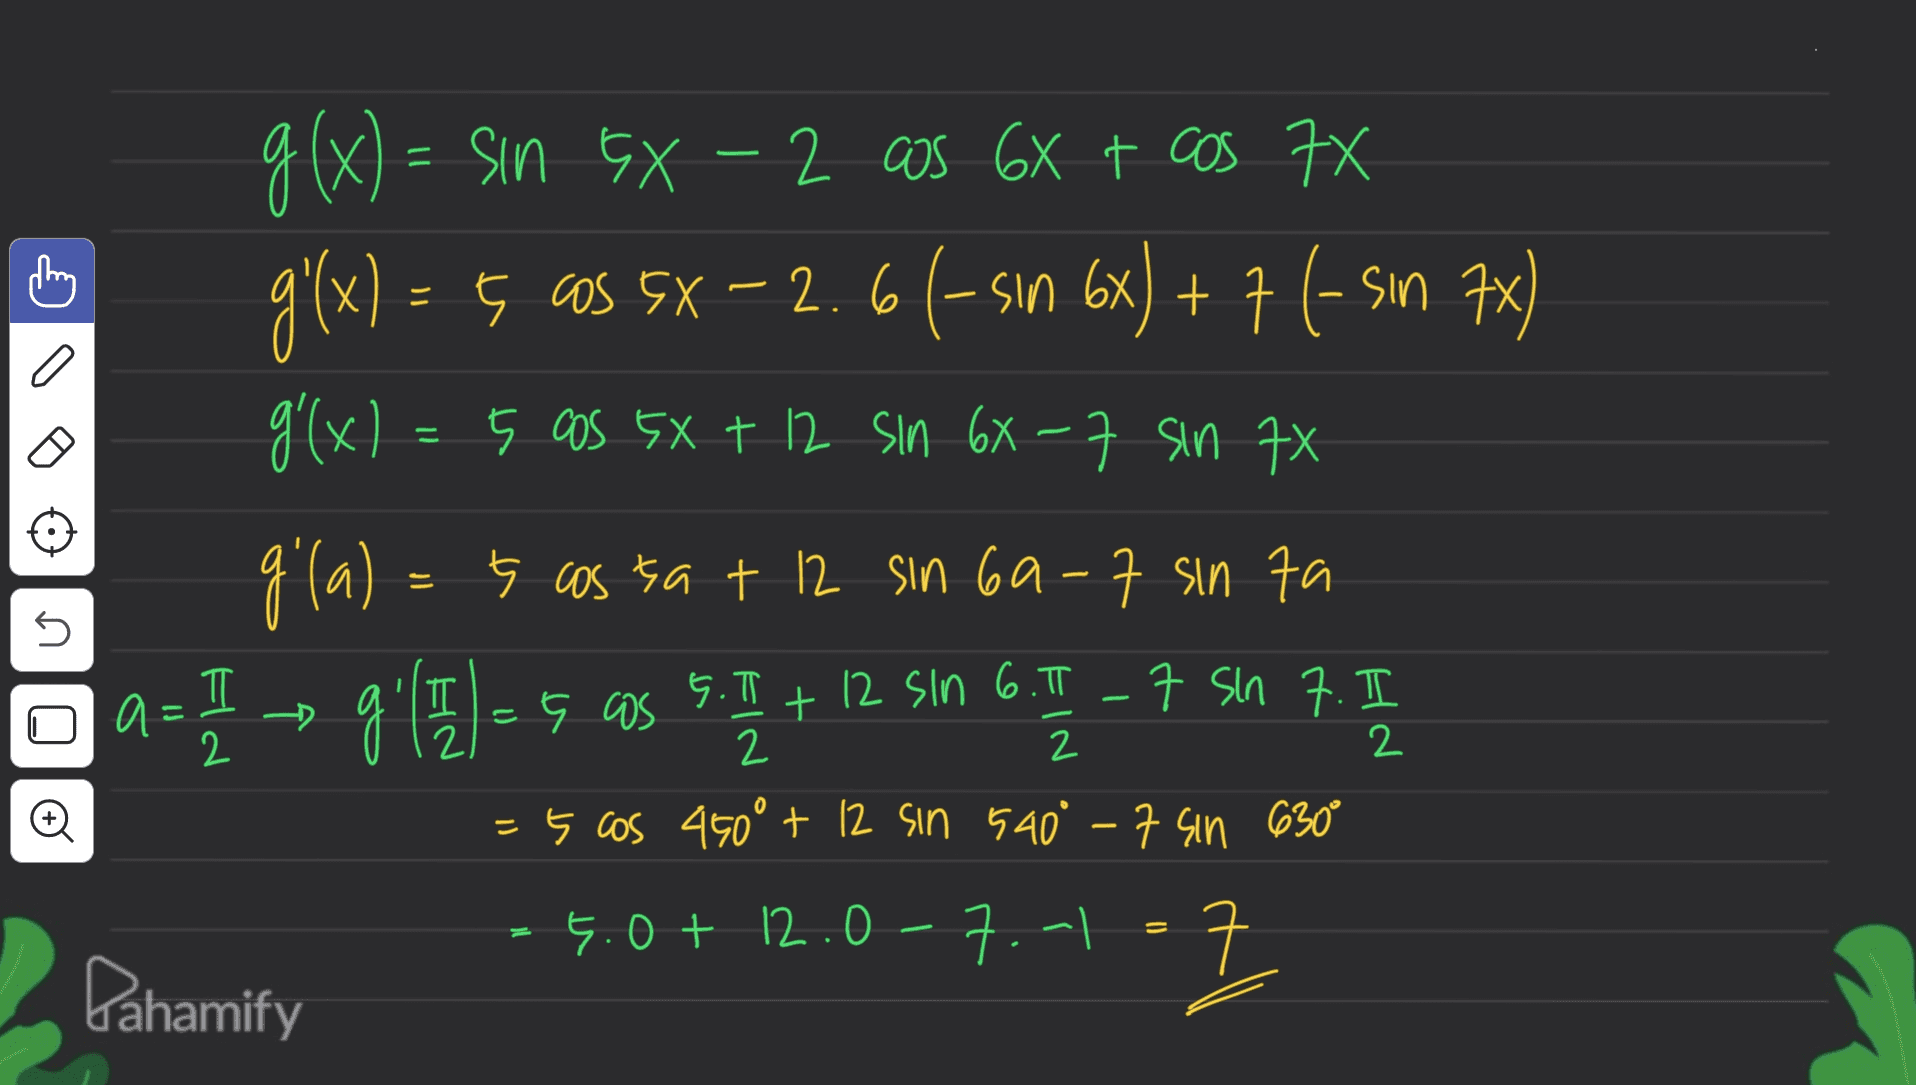 g(x) = sin GX-2 cos 6x + cos 7X g'(x) = 5 OS 5X – 2. 66-sın 6x) + 7 (-sın 7x) g'(x) = 5 cos 5X + 12 sin 6X-7 sin 7X gila) = 5 cassa + 12 sin 69-7 sin ta a= 1 → 9.1E]=5. as 5.1 + 12 sin 6.1 – 7 5 7.5 n ภ = 5 cos 450° + 12 sin 540° -7 sin 630° 4.0+ 12.07.-1=7 ㅋ Pahamify 크 